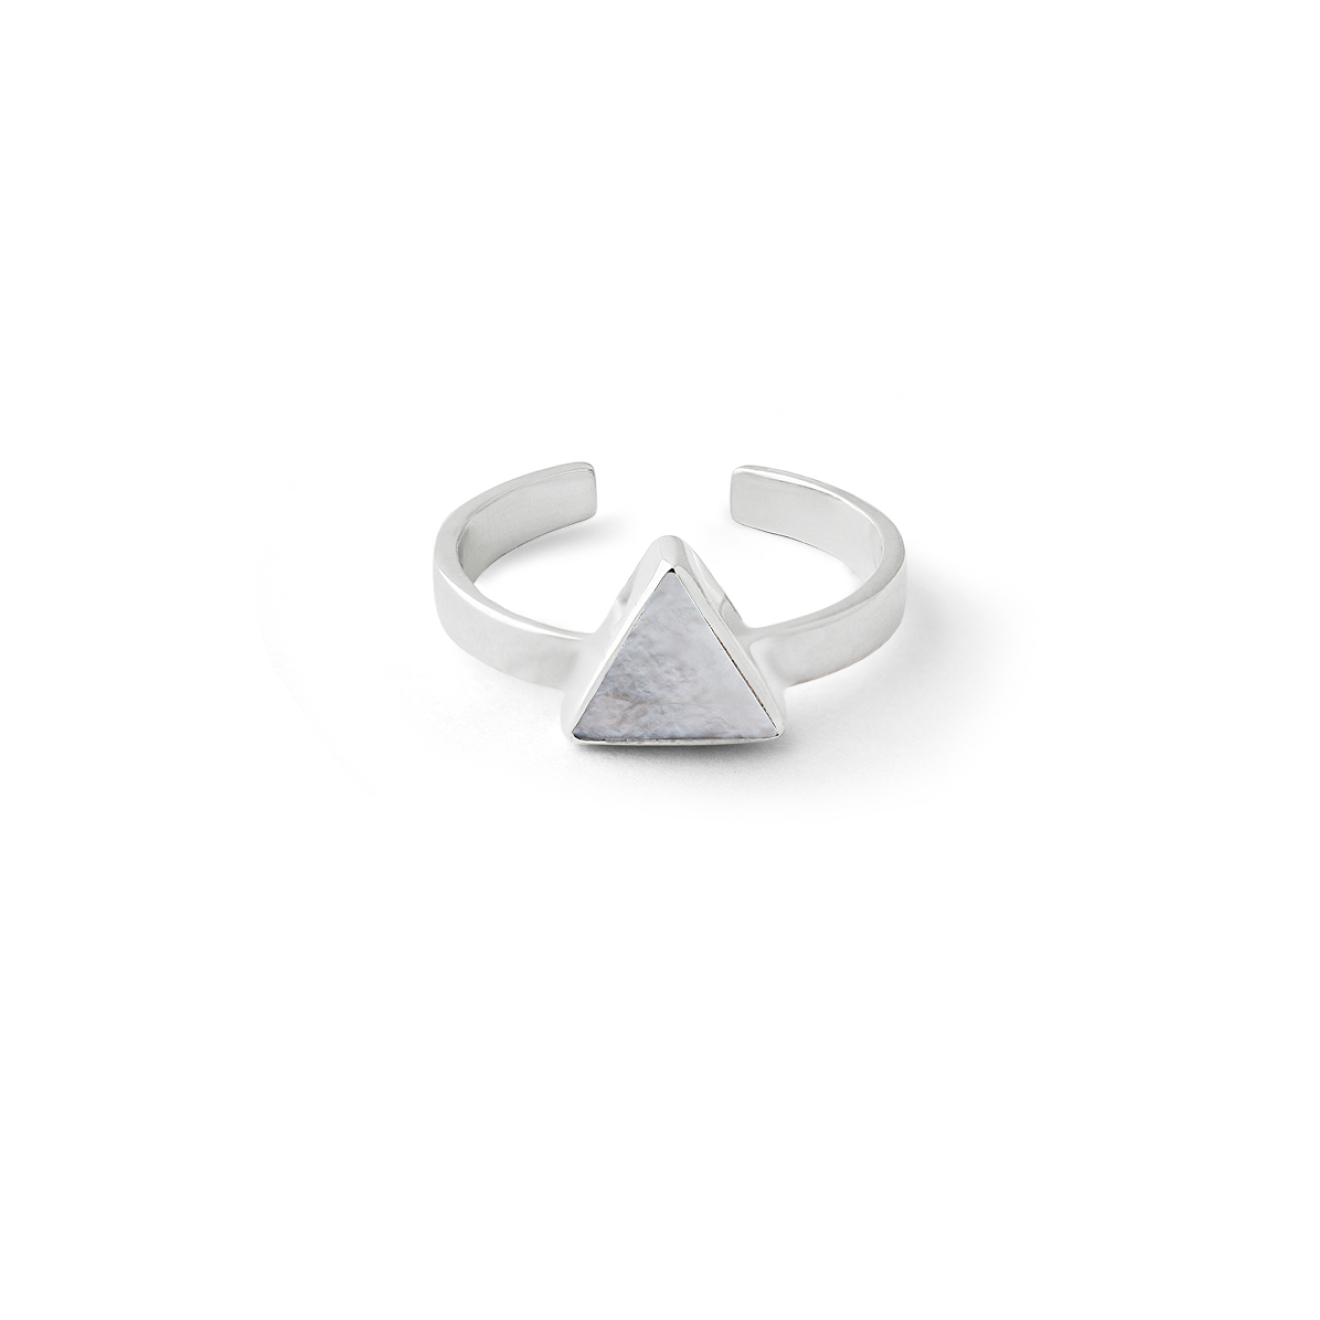 Wishes Come True Кольцо-треугольник из серебра со светлым плоским перламутром wishes come true незамкнутое кольцо с квадратом из серебра со светлым плоским перламутром